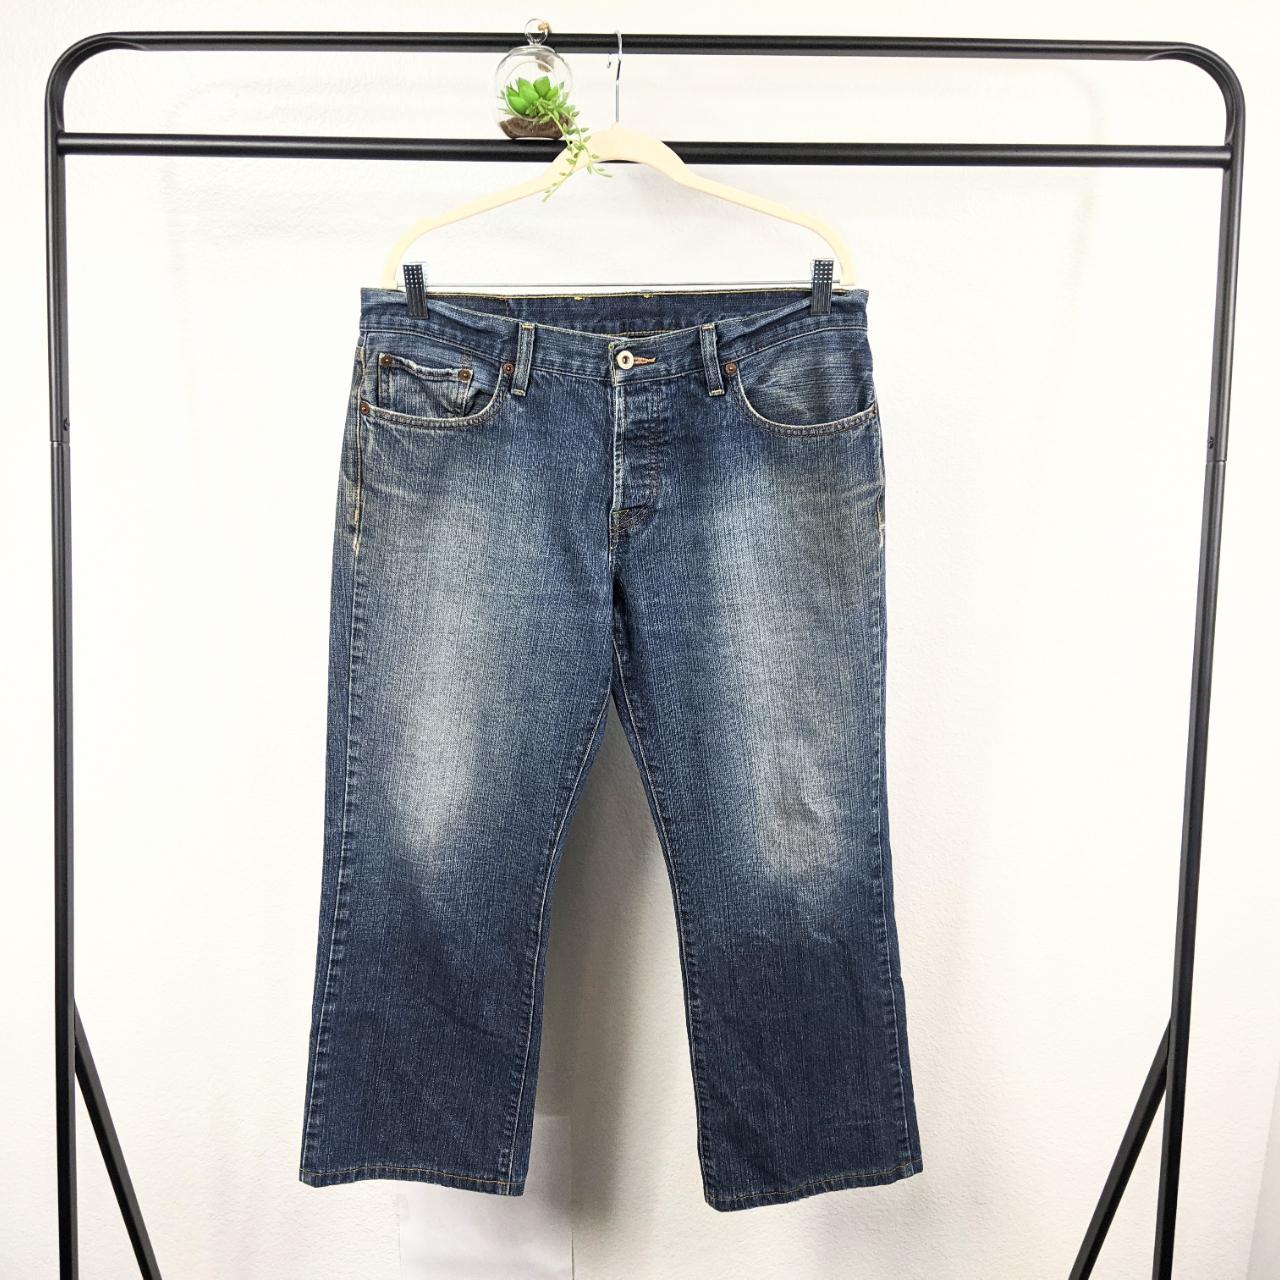 Lucky Brand Jean Shorts Men 33* Straight Blue Cut - Depop